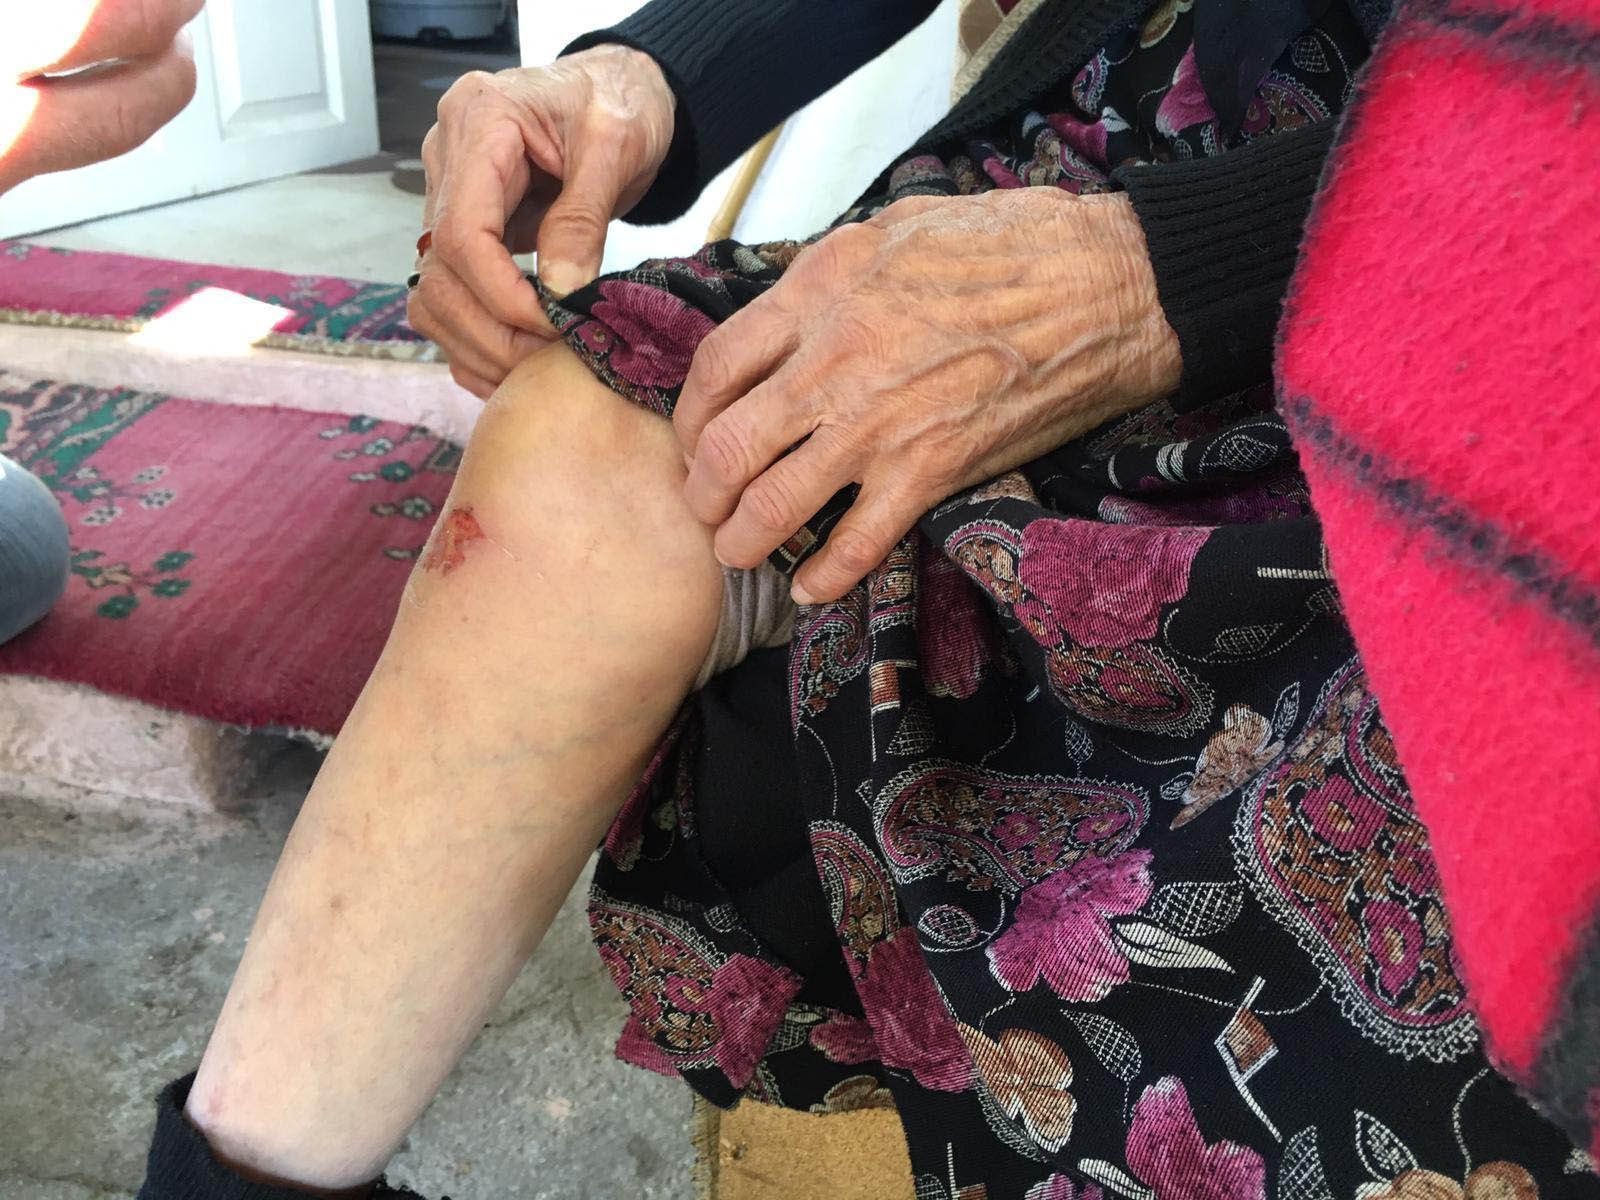 Odun satıcısı görünümündeki kişilerce gasp edilen yaşlı kadın: Allah kimseye yaşatmasın